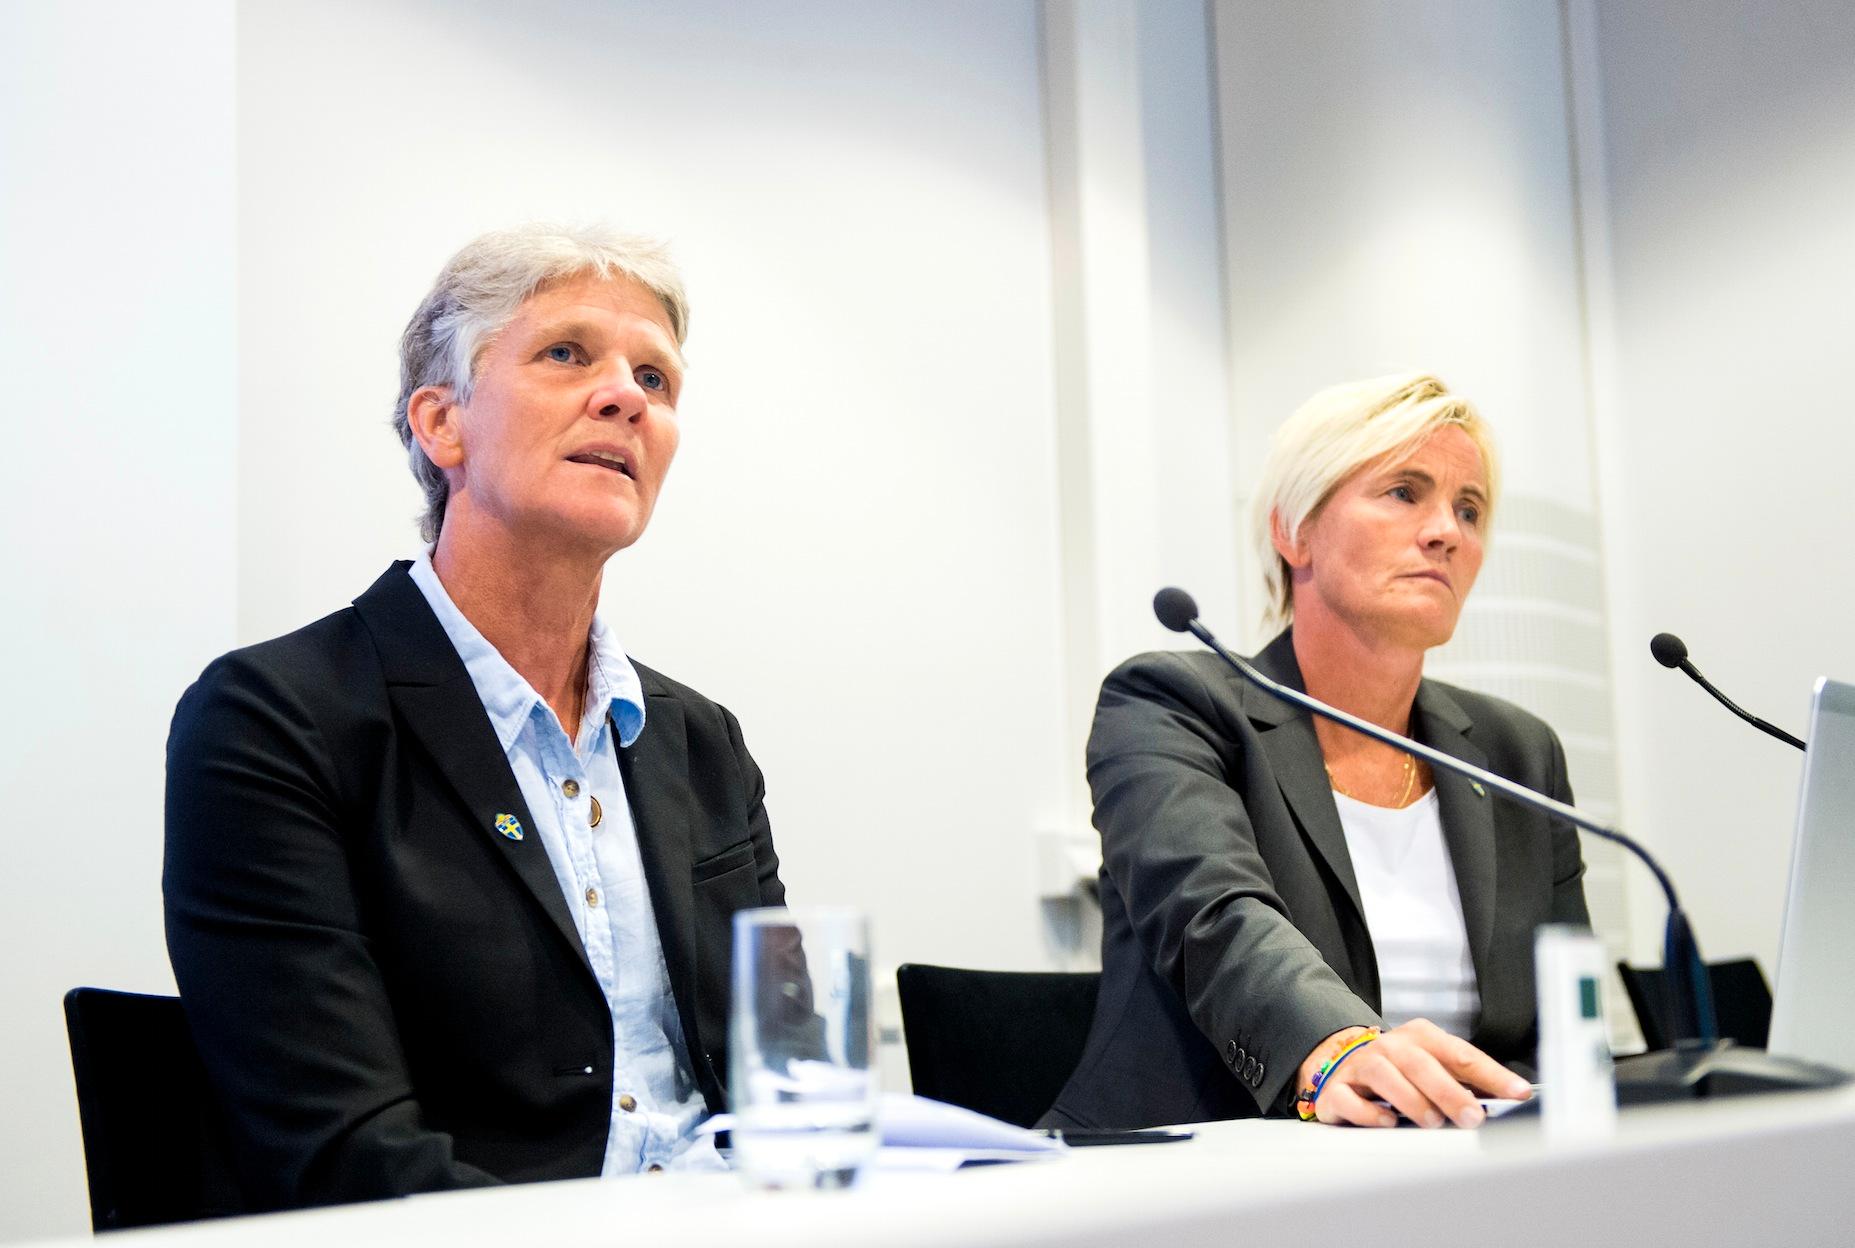 Förbundskapten Pia Sundhage och assisterande förbundskapten Lillie Persson under en presskonferens inför damernas EM-kval den 4 september.